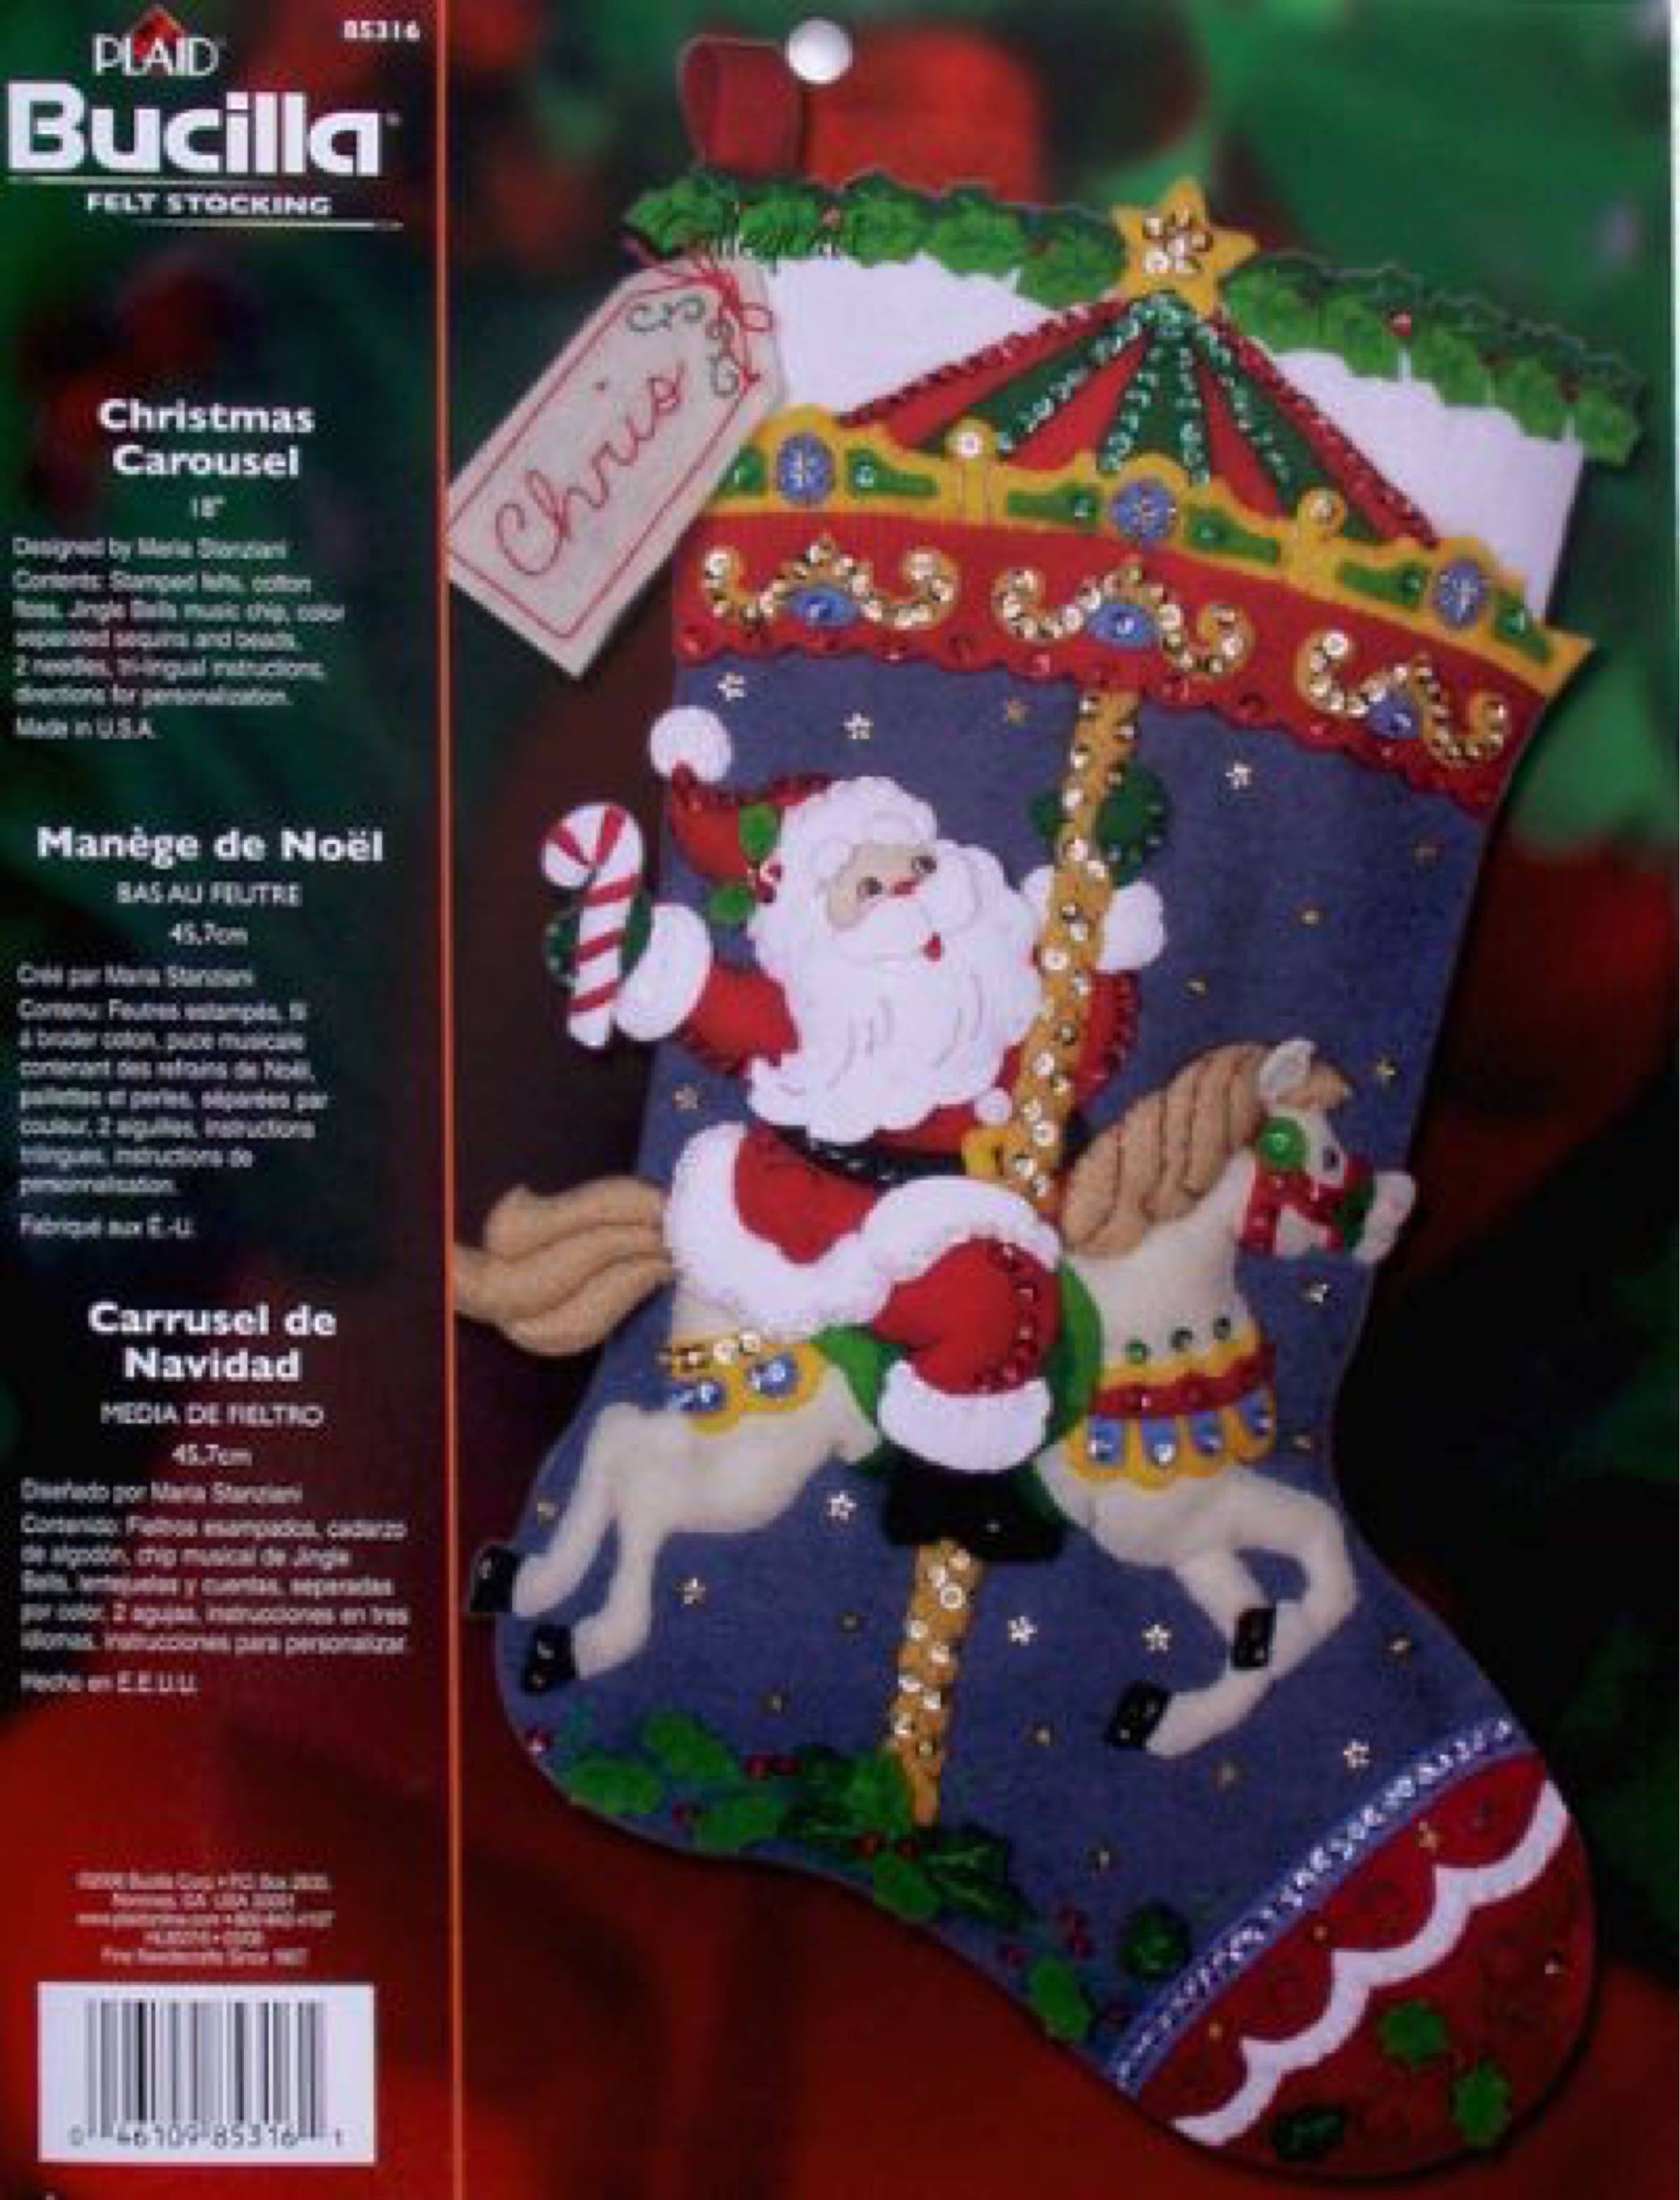 Letter to Santa Felt Stocking Kit